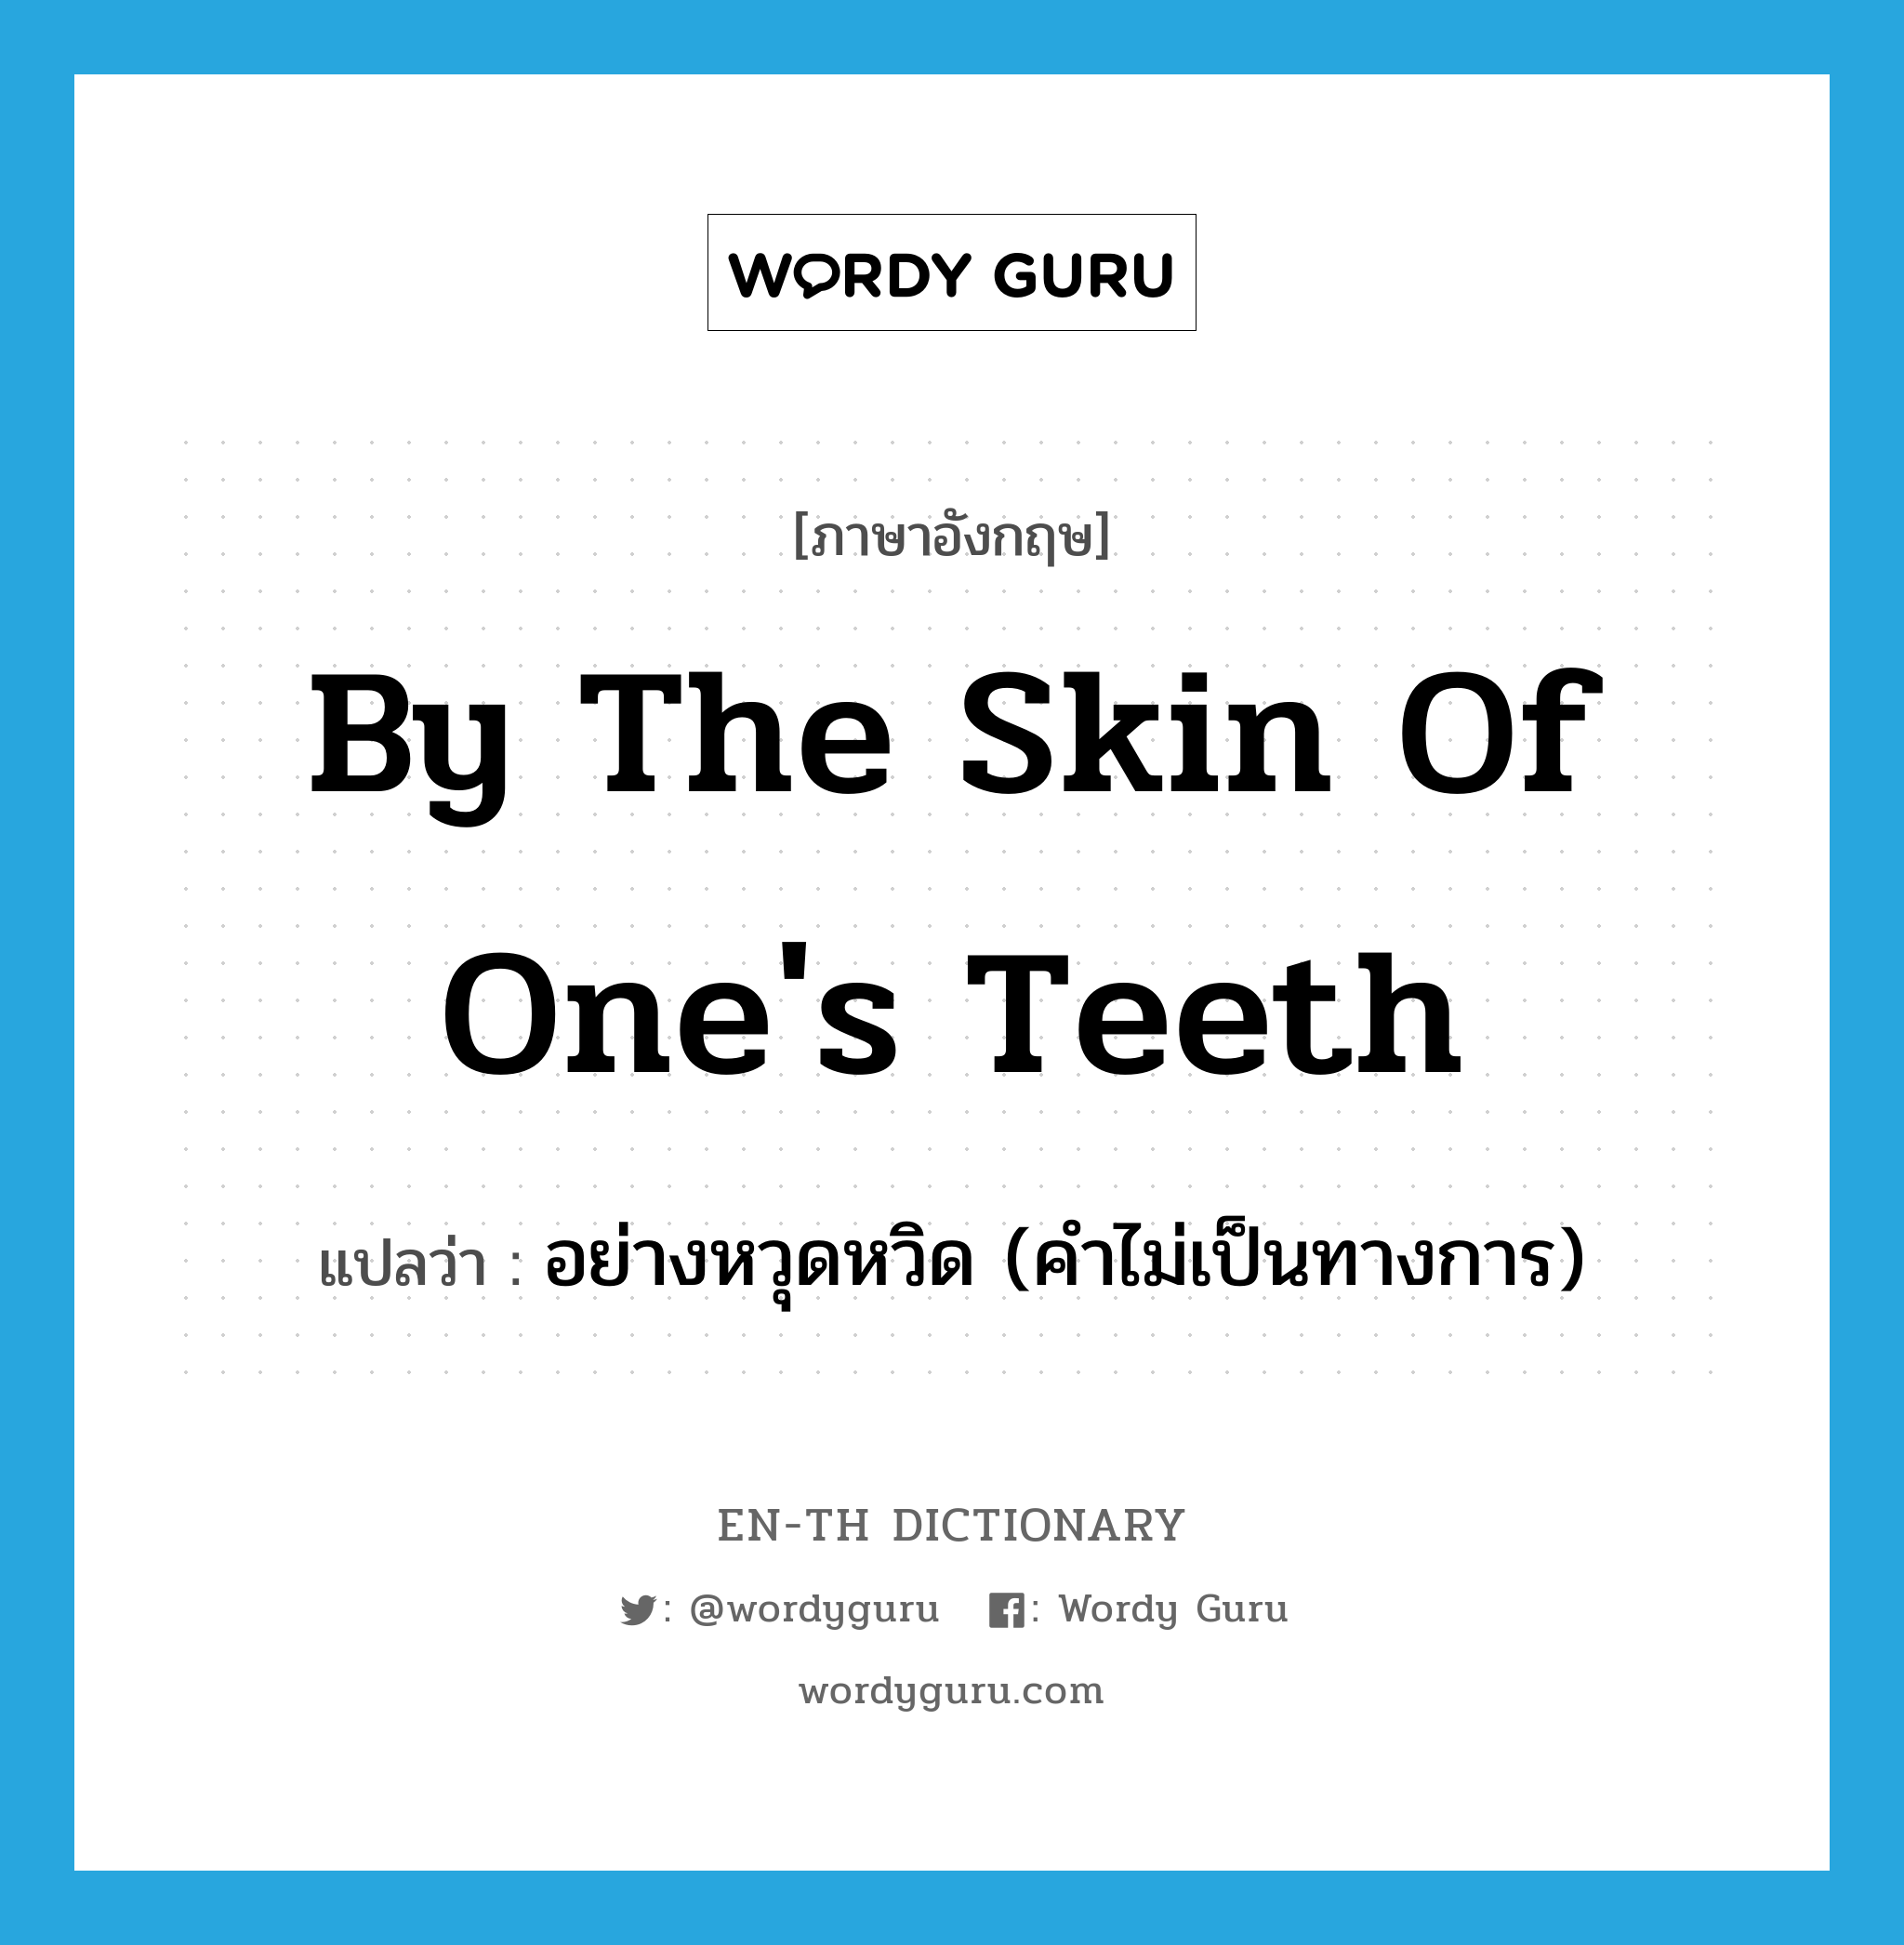 อย่างหวุดหวิด (คำไม่เป็นทางการ) ภาษาอังกฤษ?, คำศัพท์ภาษาอังกฤษ อย่างหวุดหวิด (คำไม่เป็นทางการ) แปลว่า by the skin of one's teeth ประเภท IDM หมวด IDM